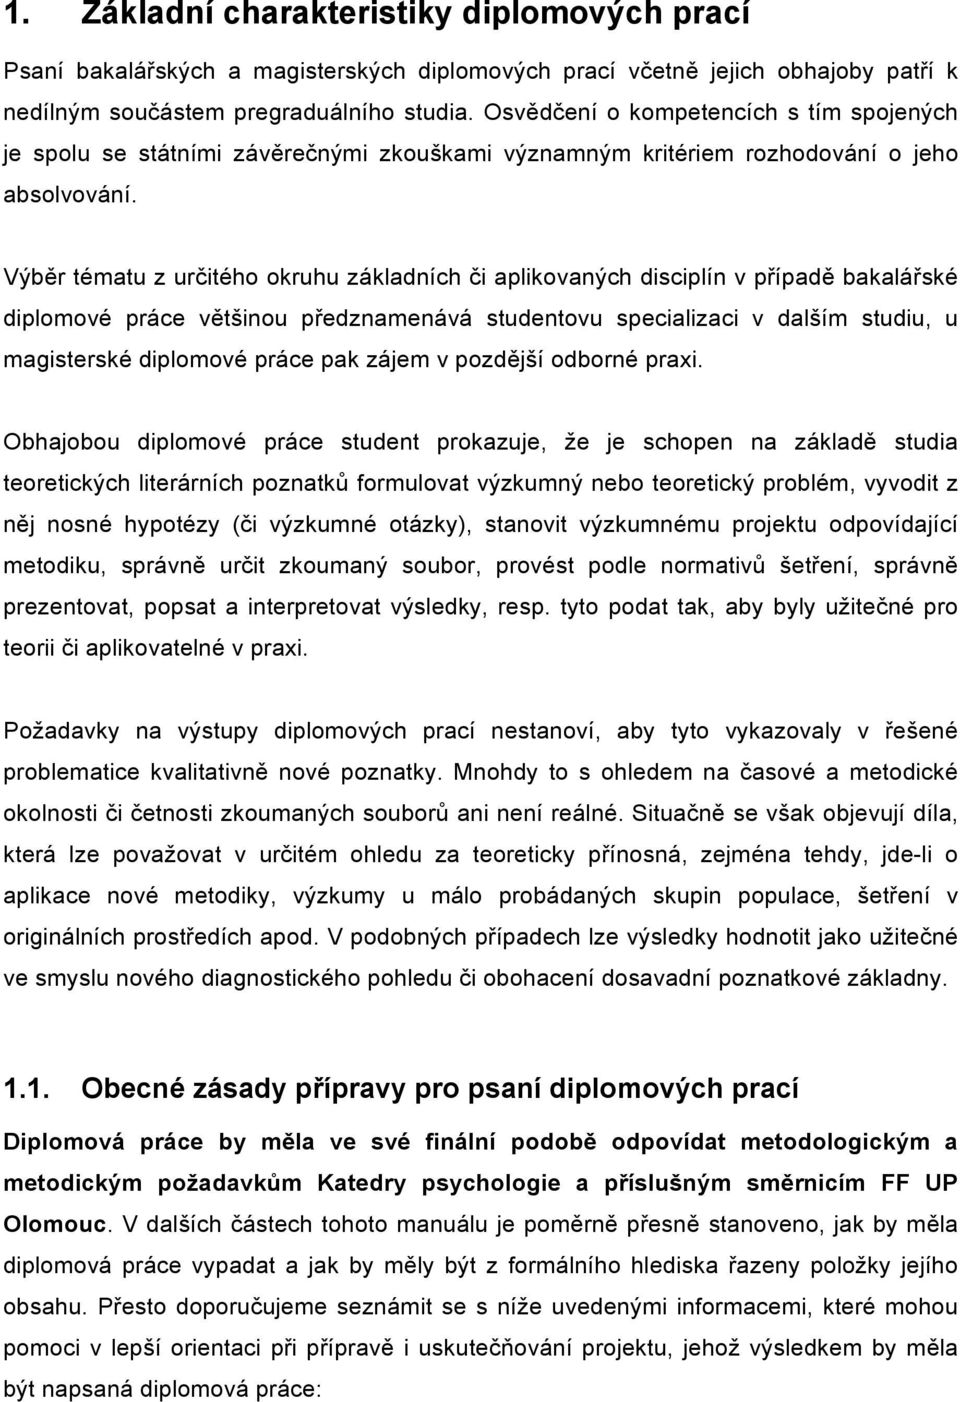 Manuál pro psaní diplomových prací na Katedře psychologie FF UP v Olomouci  - PDF Free Download